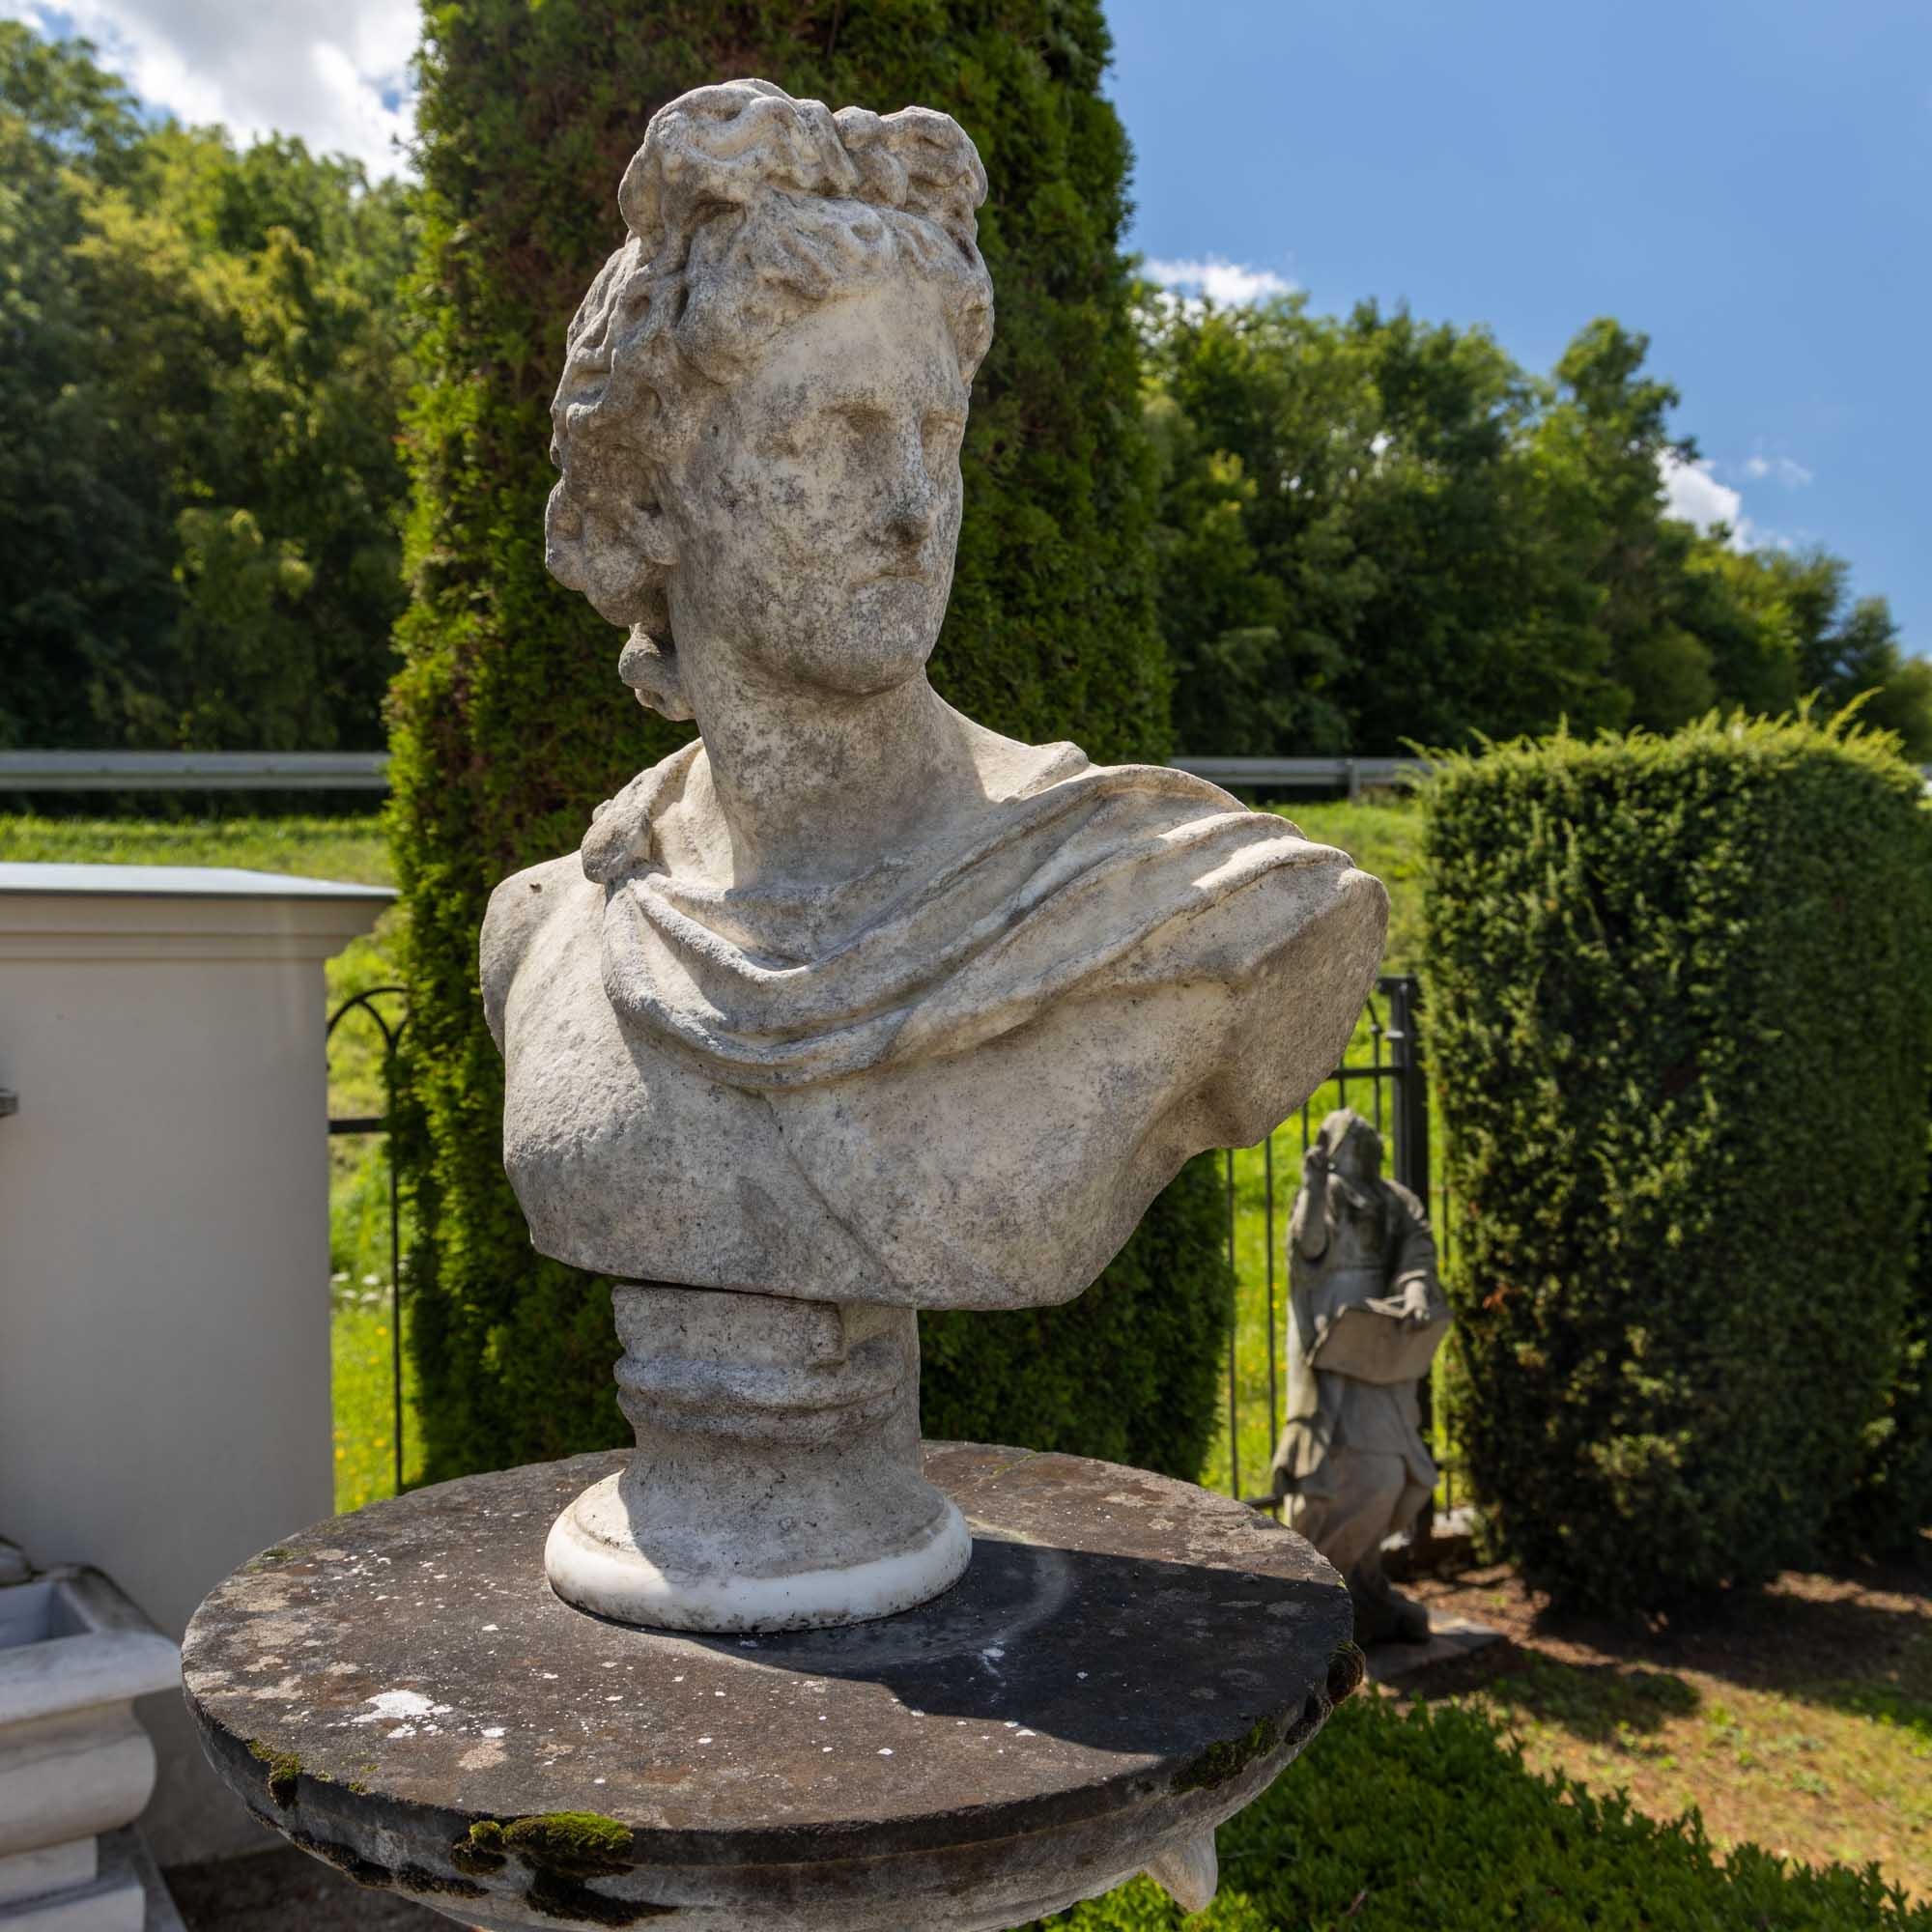 Buste du célèbre Apollo du Belvedere, l'original datant du troisième siècle avant Jésus-Christ. Ici, une variante en granit taillé à la main avec des traces d'altération et un caractère authentique légèrement adouci.